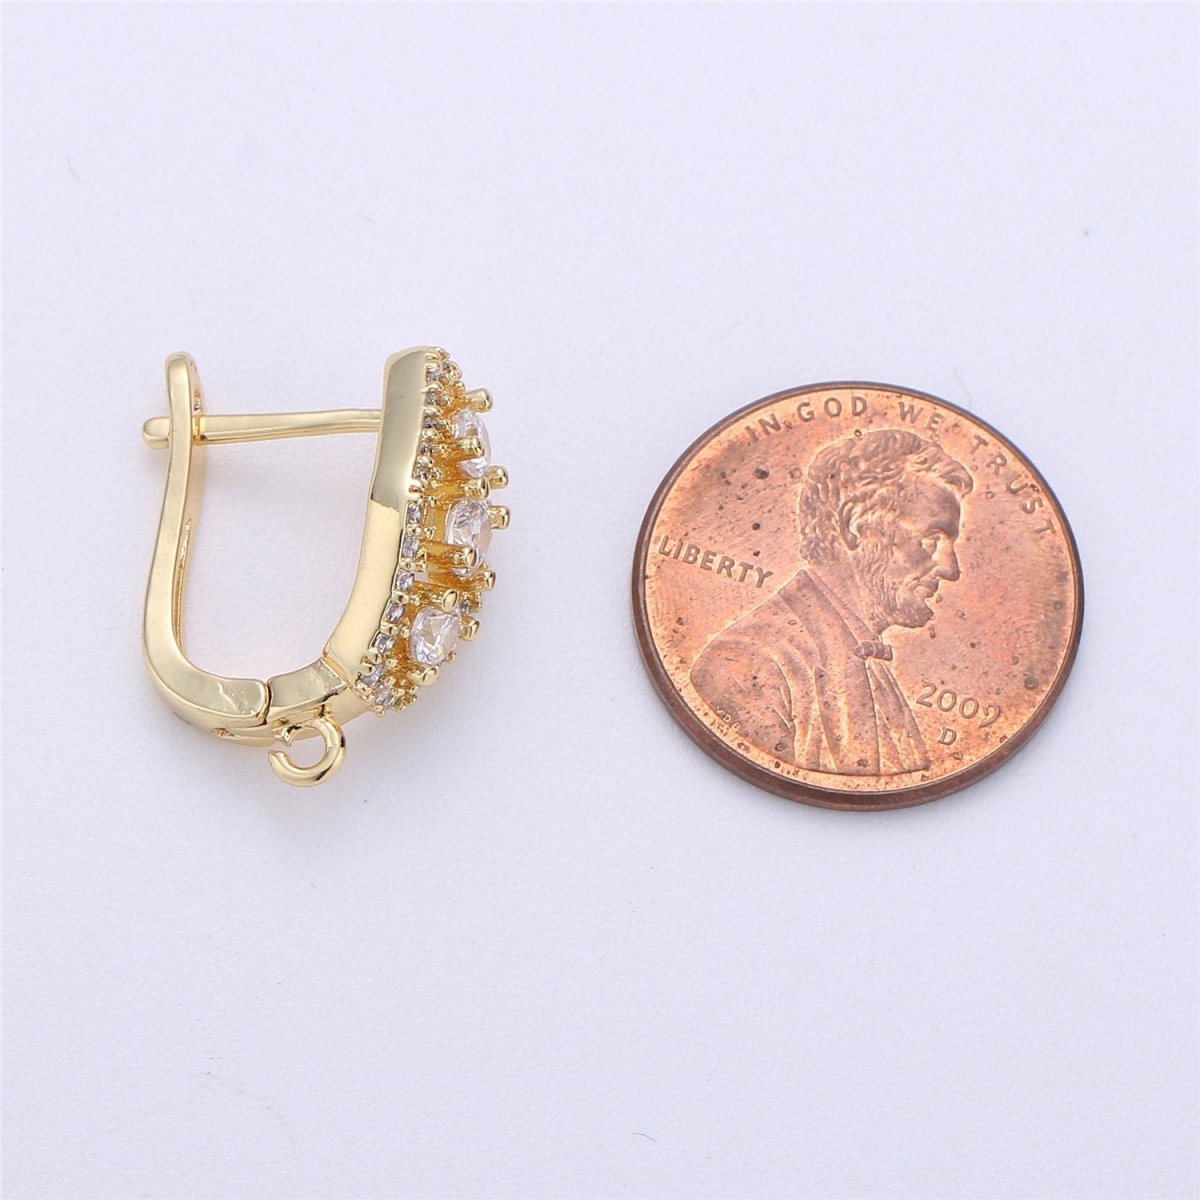 CZ Micro Pave Gold, Silver Latch Back Earring, Leverback ear wires open Link earrings 14k gold filled earring lead free nickel free K-316 - DLUXCA